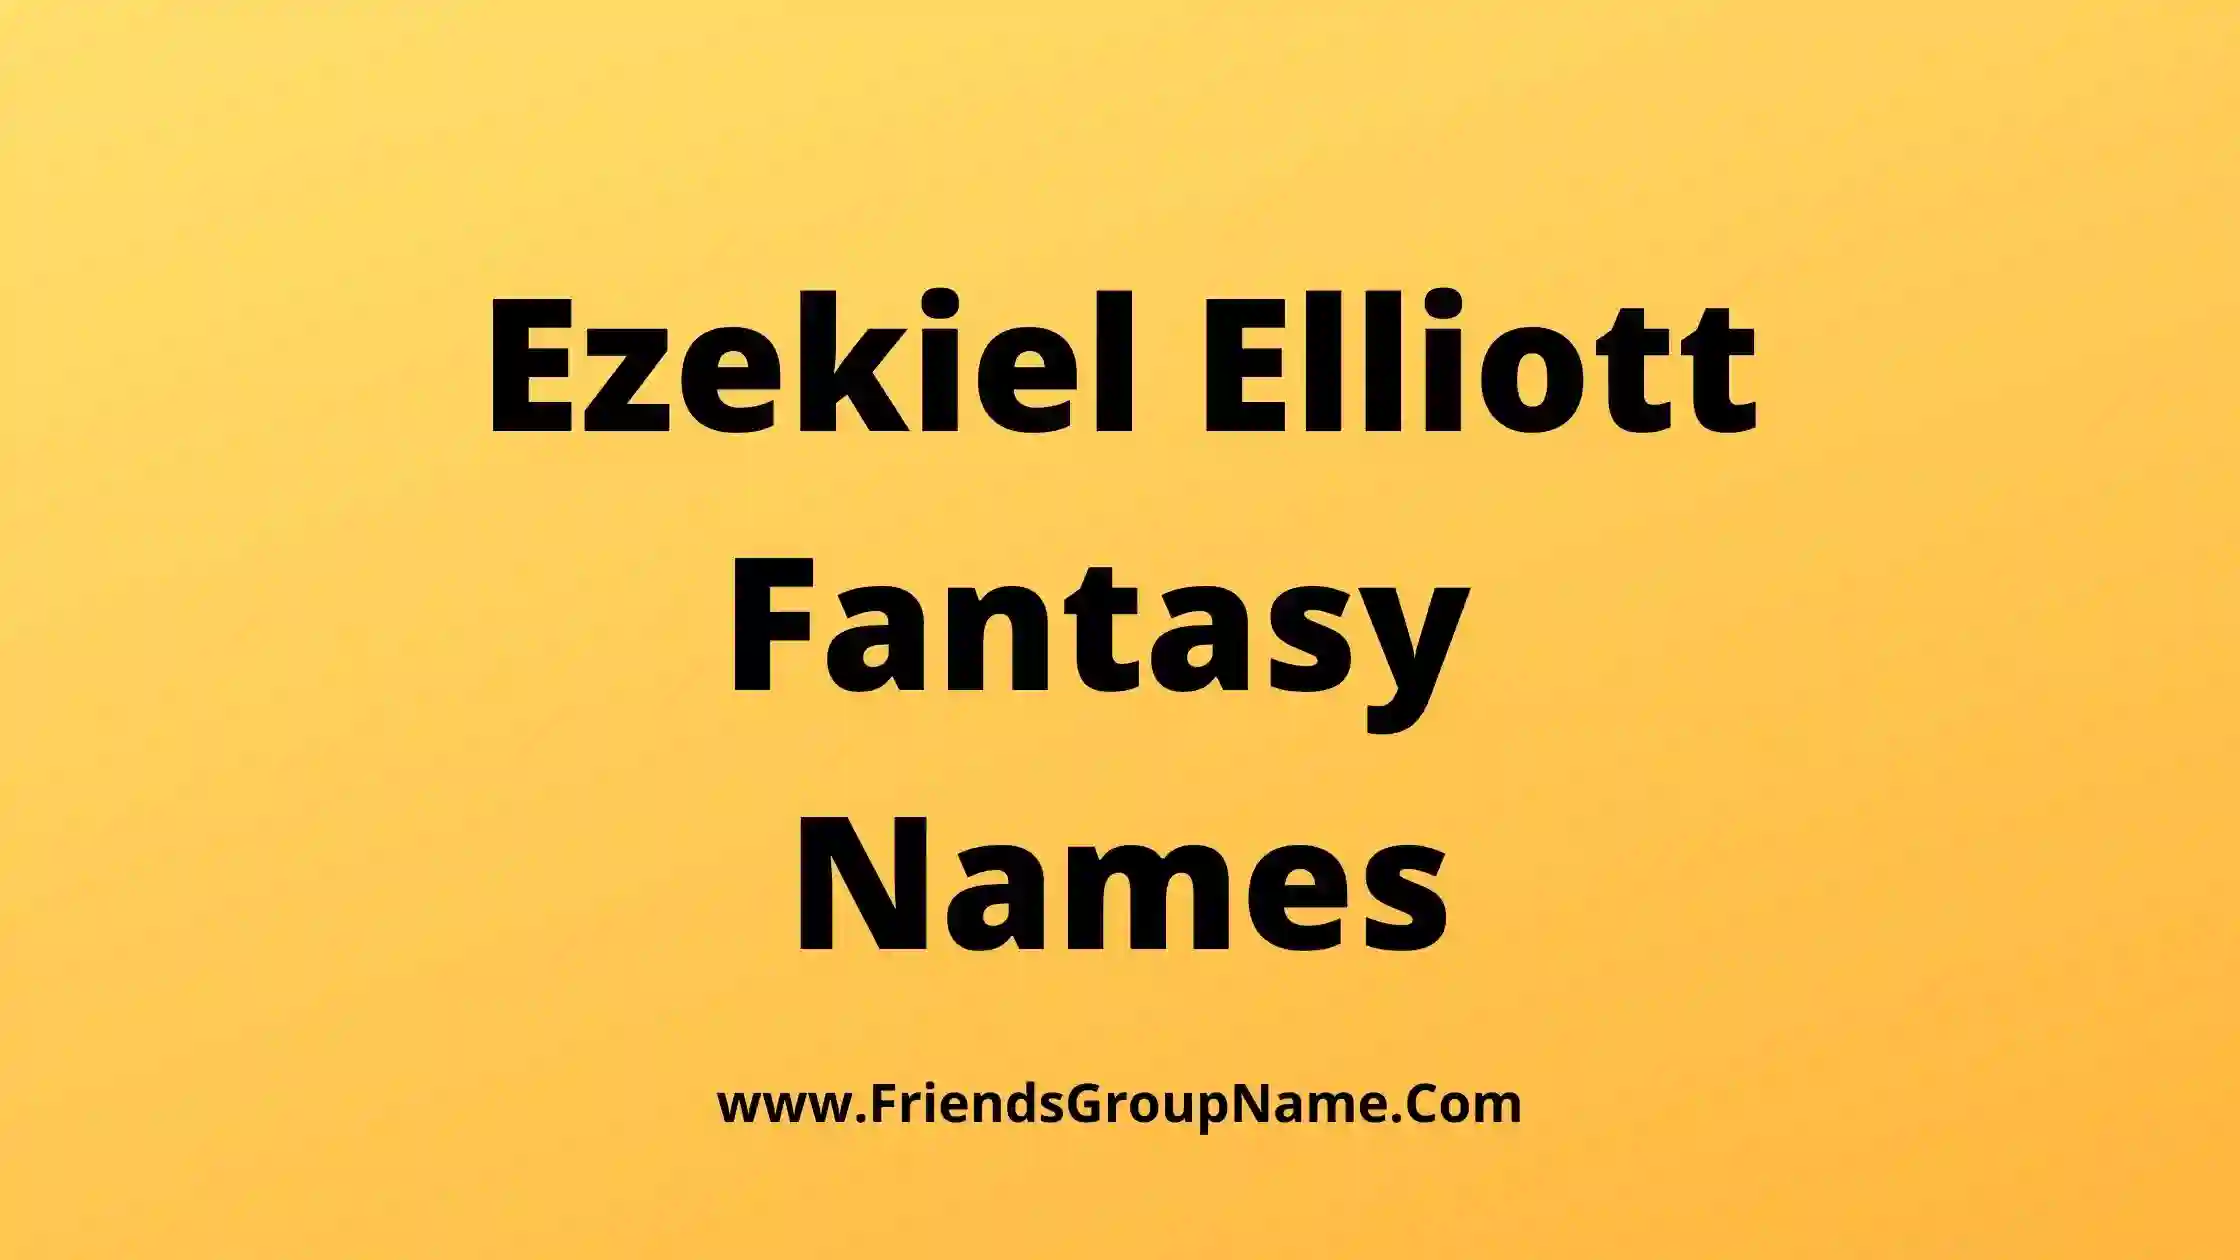 Ezekiel Elliott Fantasy Names